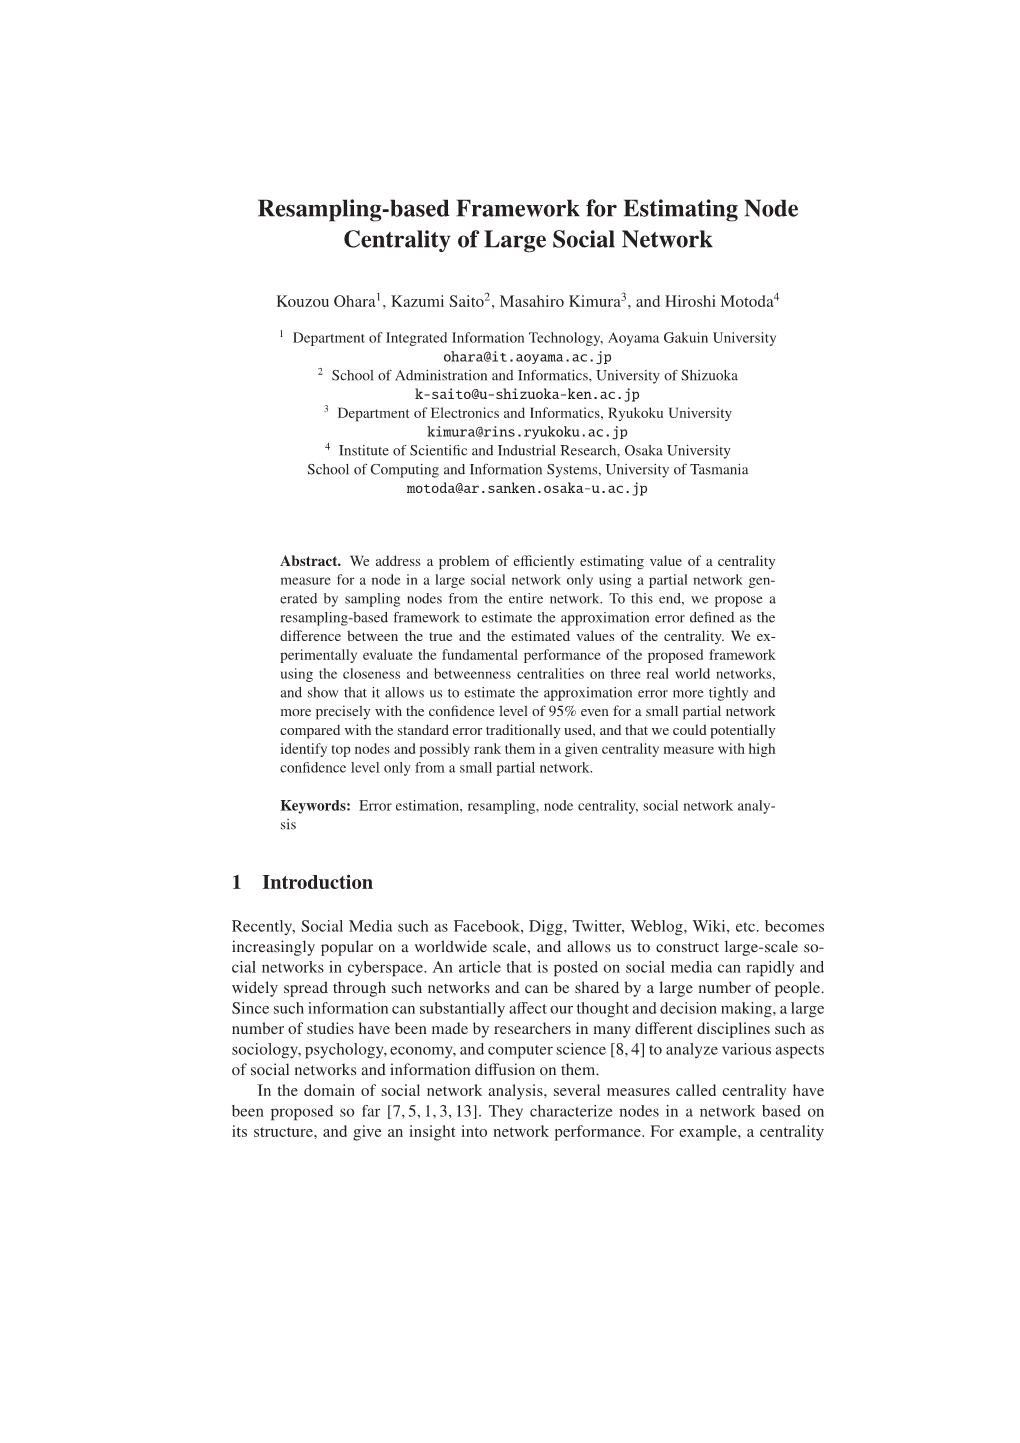 Resampling-Based Framework for Estimating Node Centrality of Large Social Network